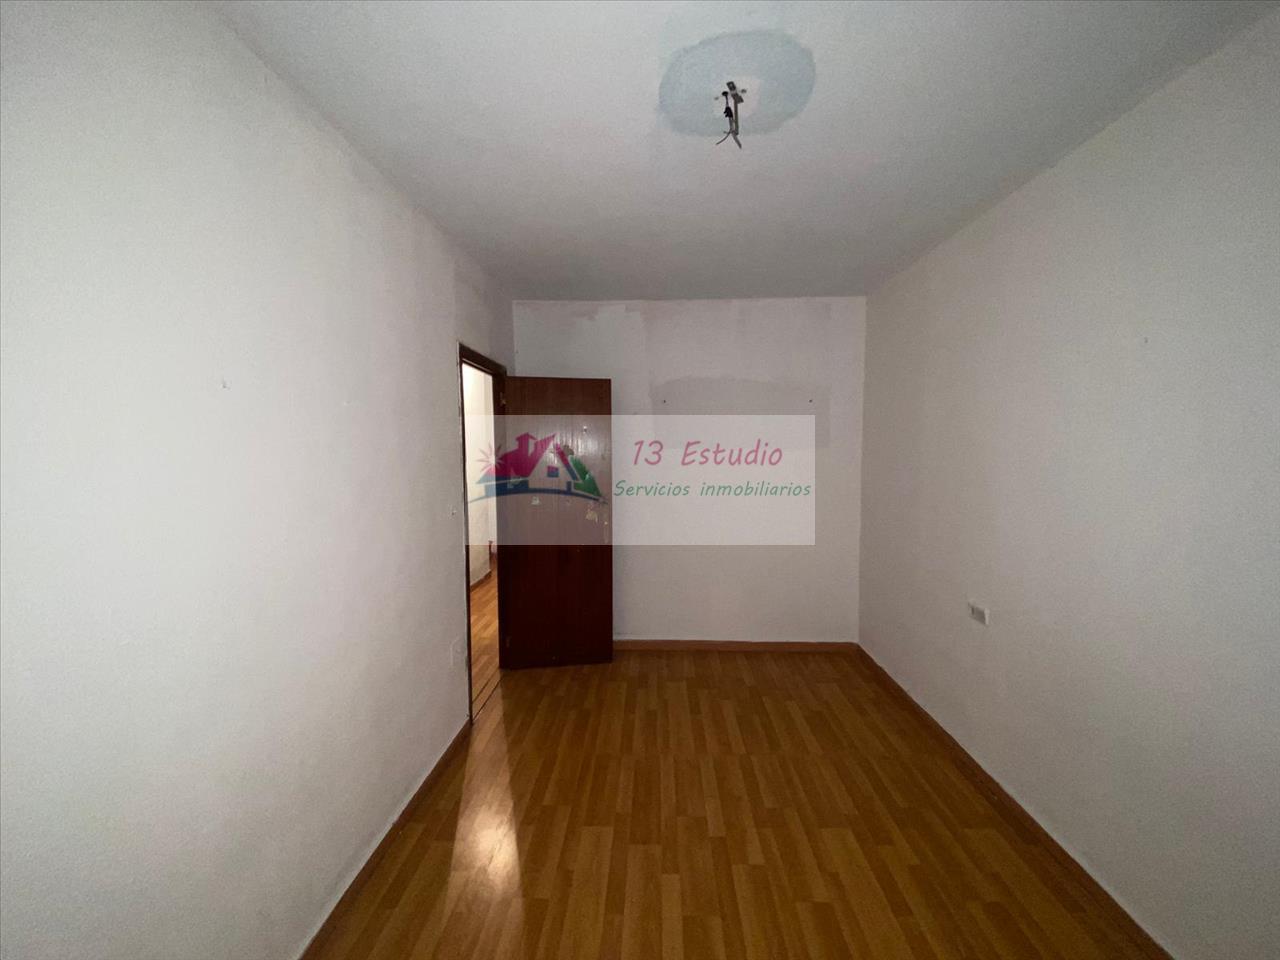 For sale of flat in La unión